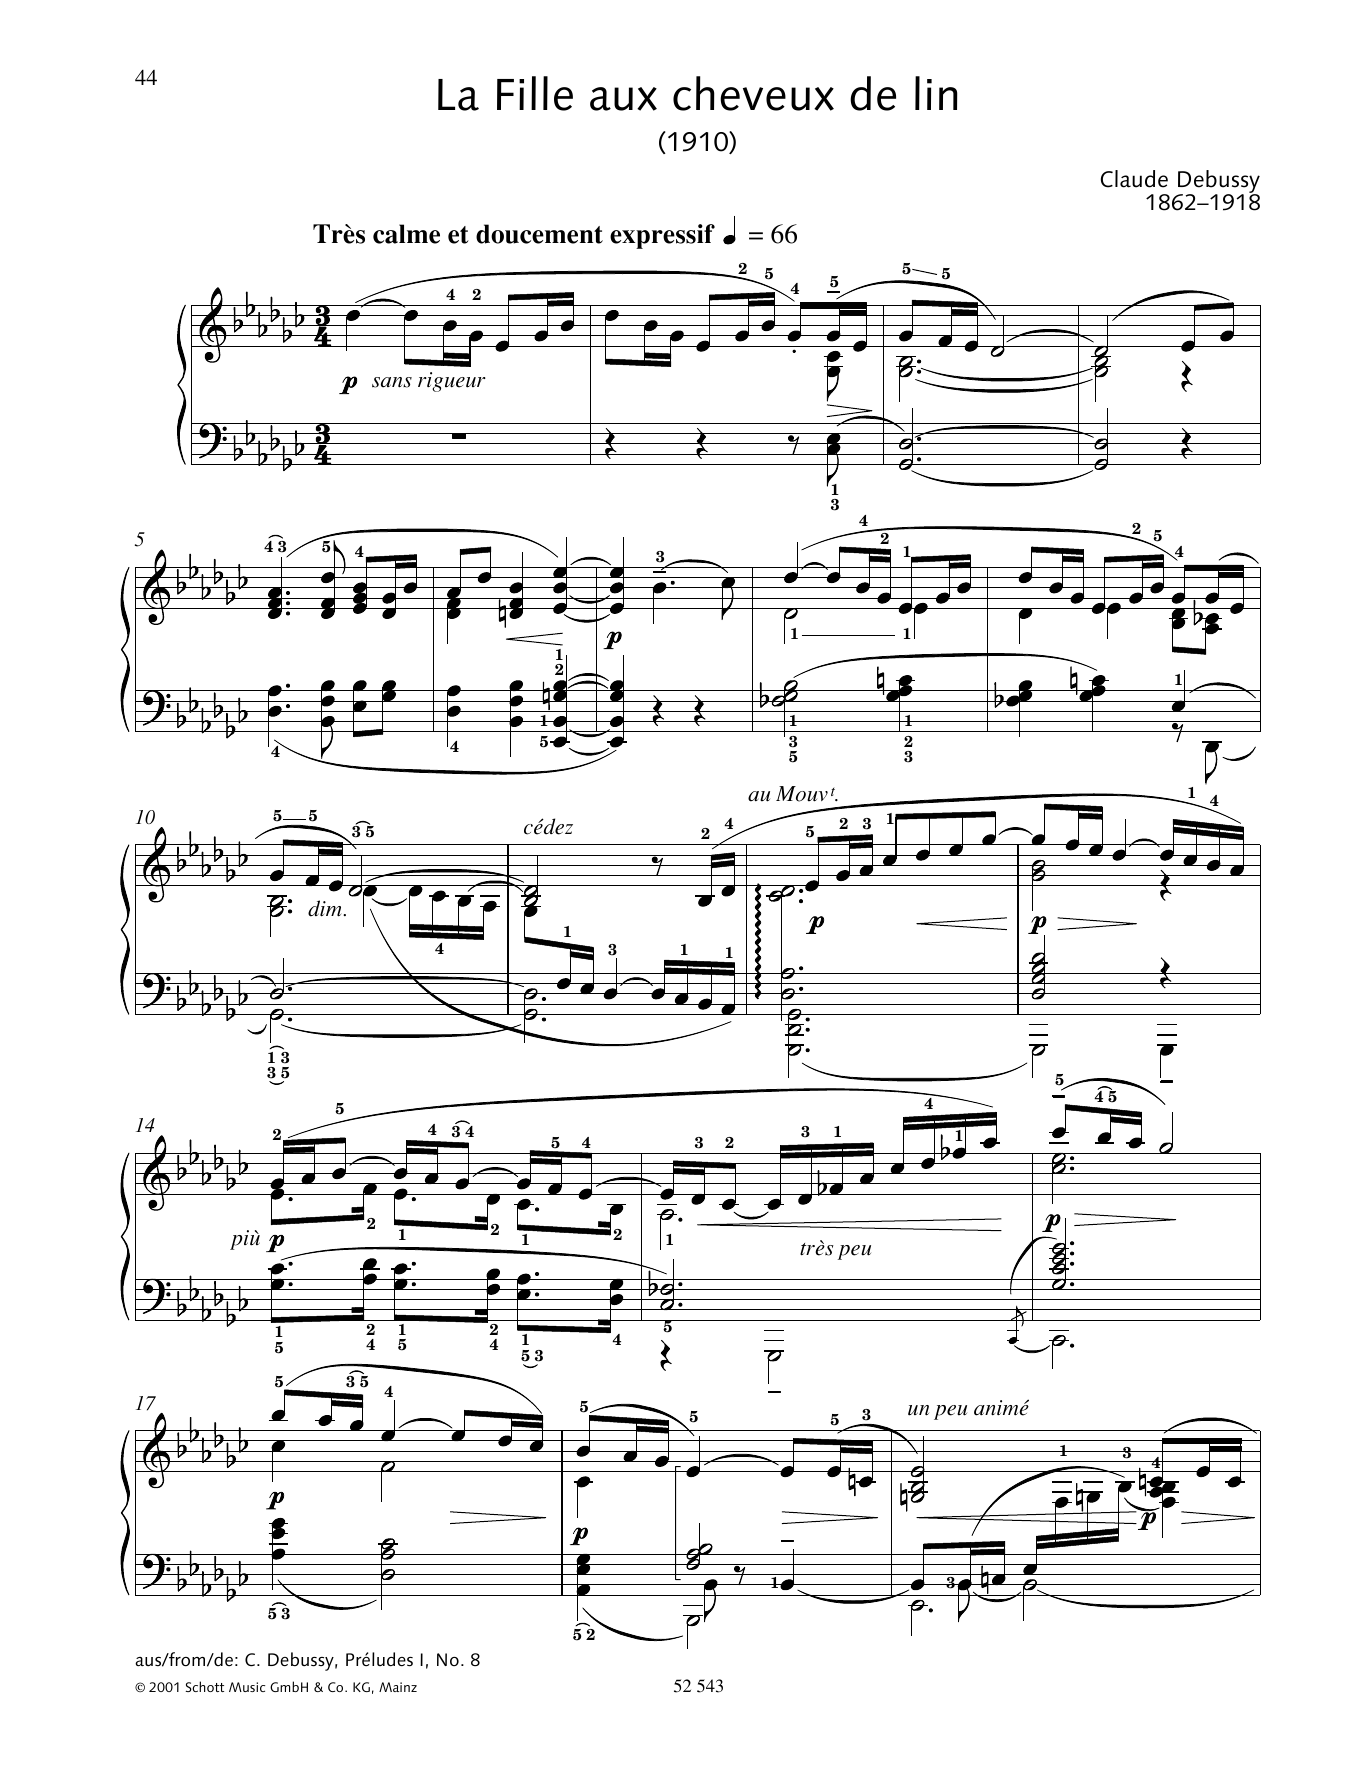 Download Claude Debussy La Fille aux cheveux de lin Sheet Music